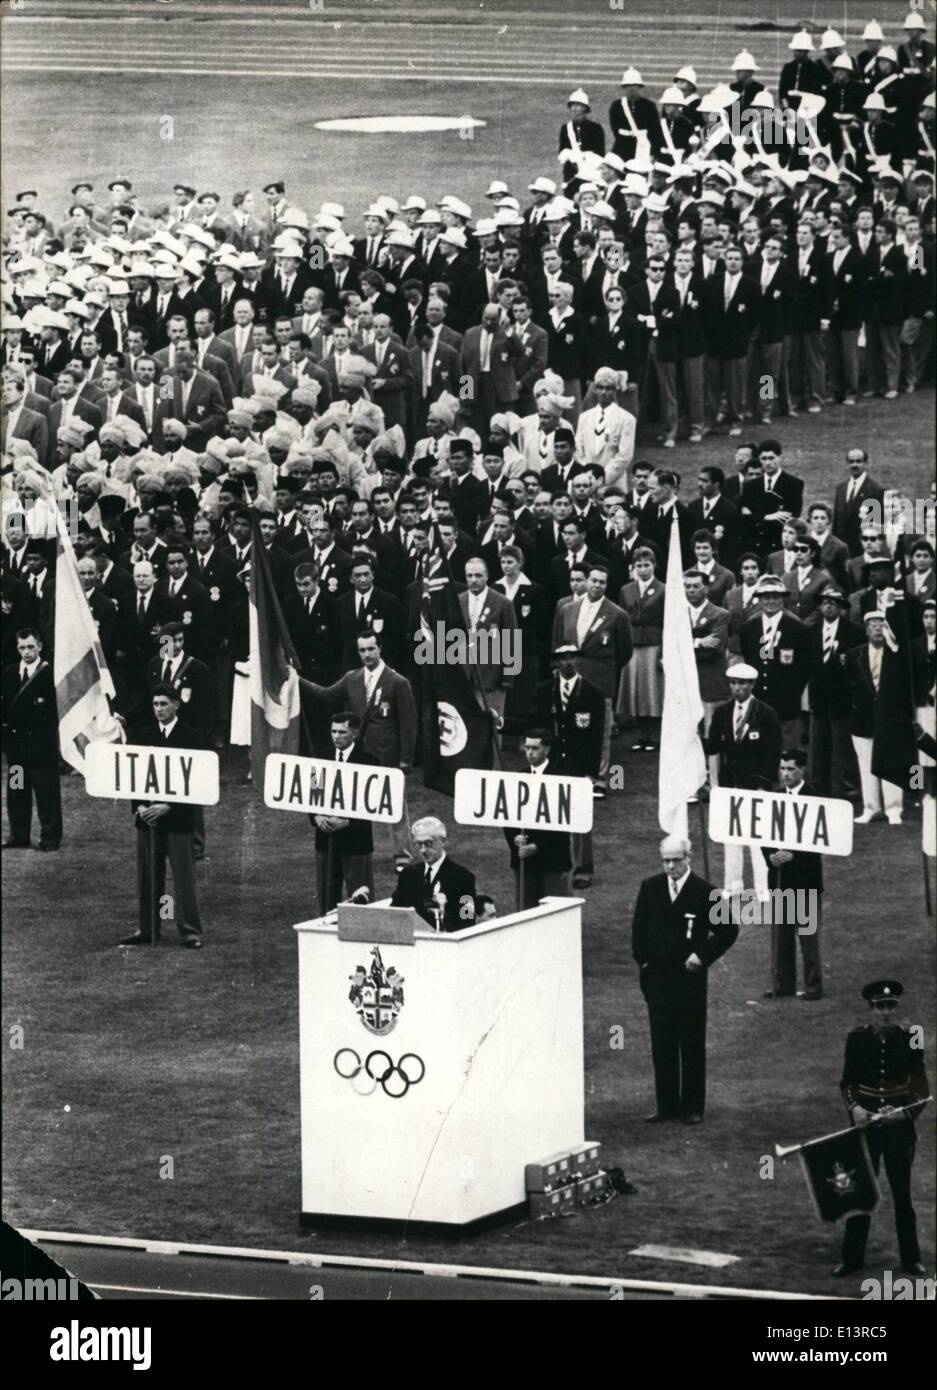 27 mars 2012 - Le jeudi 22, 11, 1958 : les cérémonies d'ouverture de la XVI jeux Olympiques d'eté commencé à Melbourne, le chef de l'organisation des Jeux Olympiques est son discours. Banque D'Images